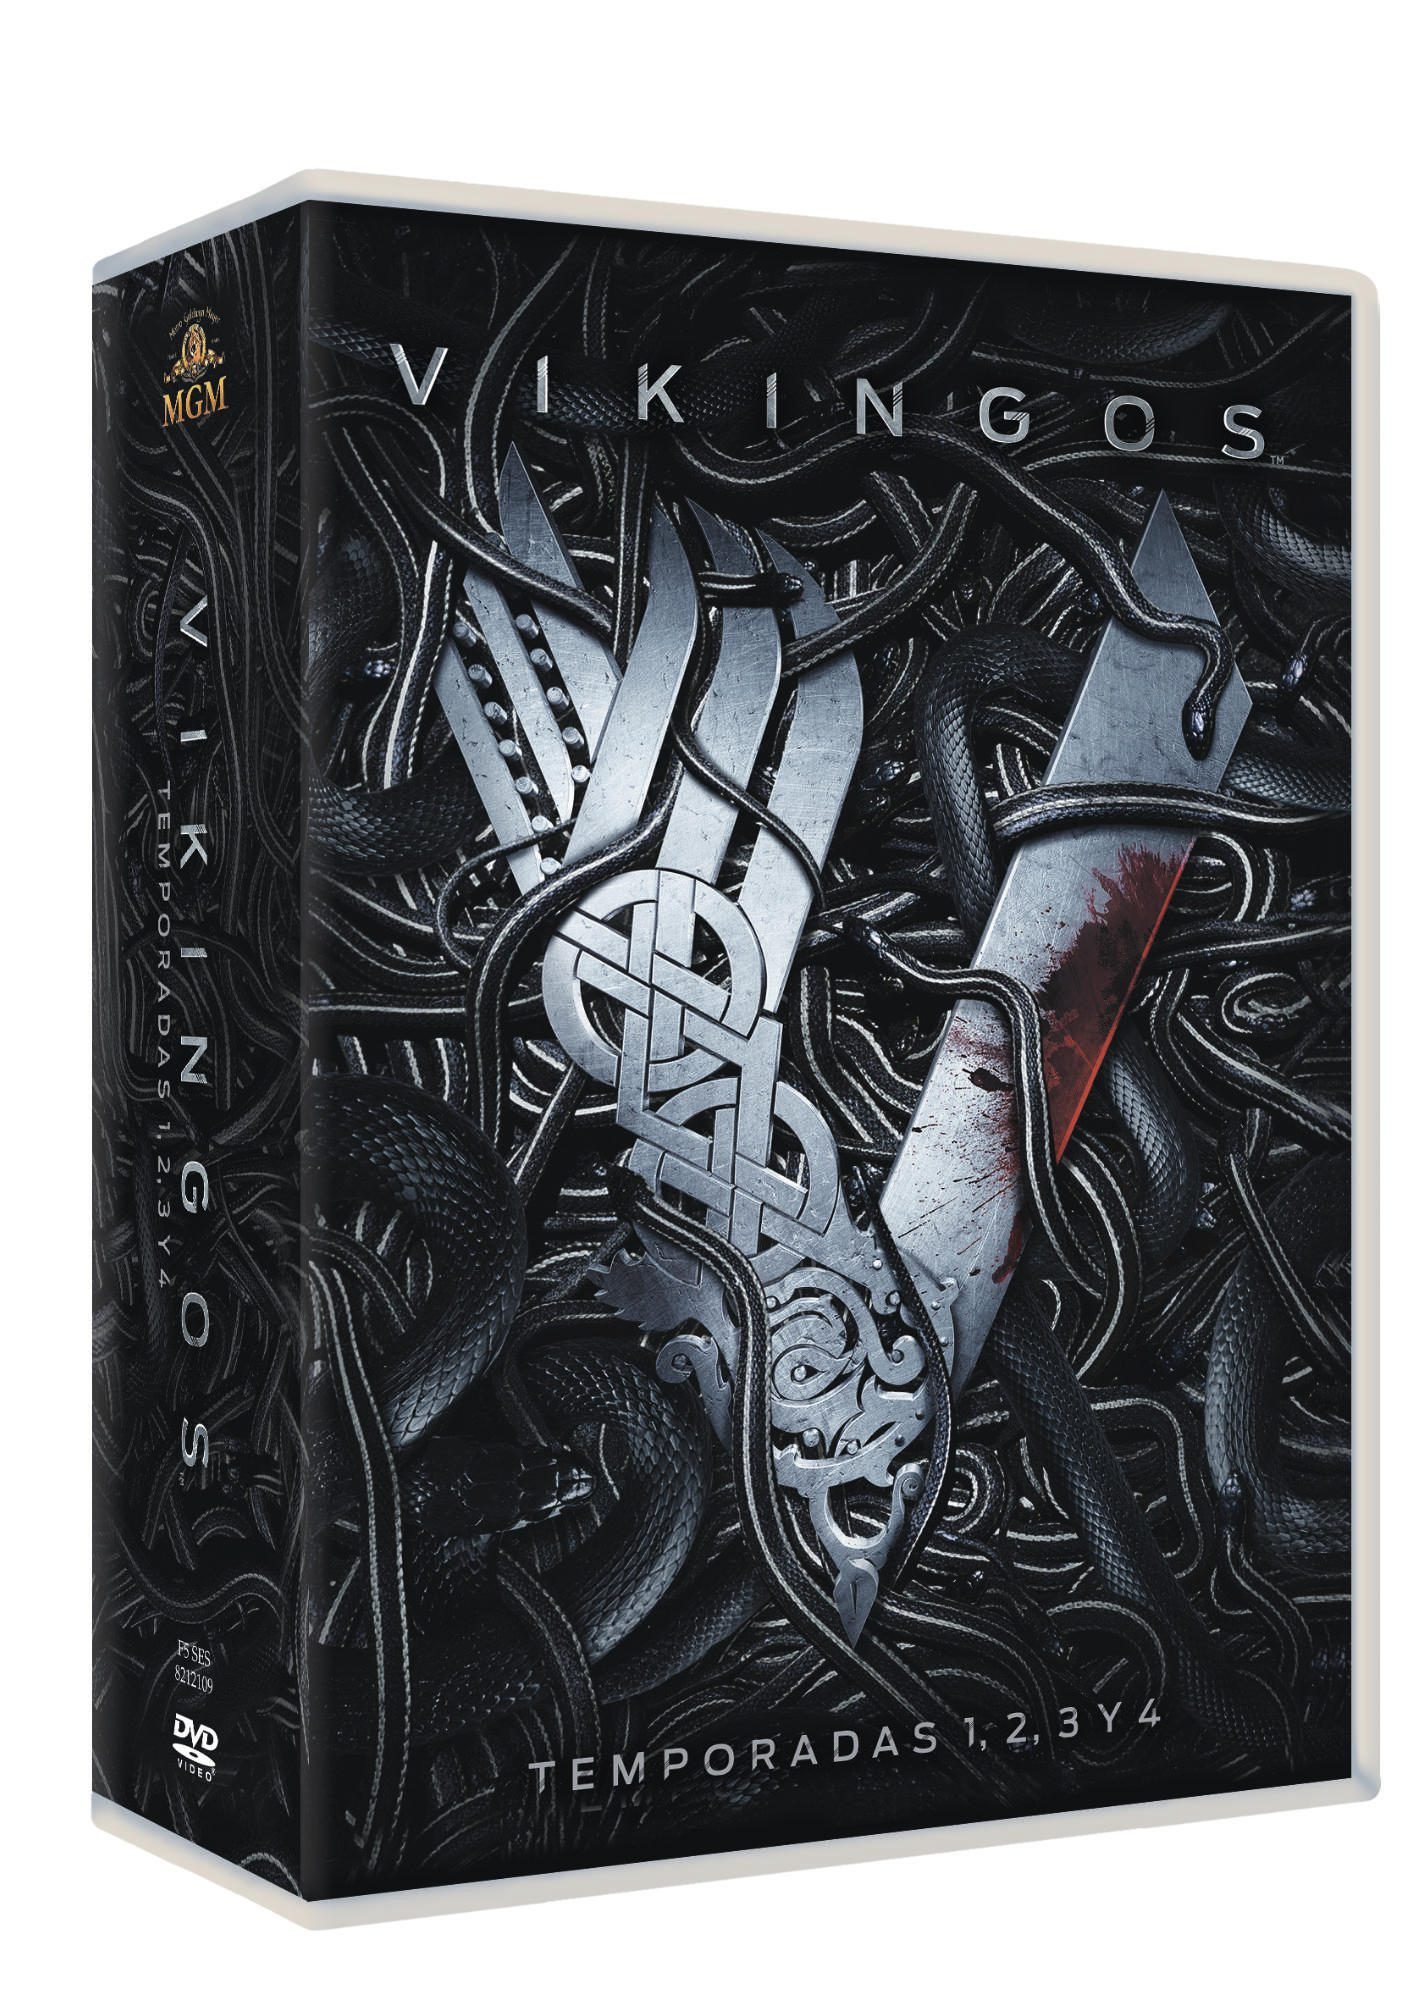 'Vikingos' Temporada 4 Parte 2 a la venta el 9 de agosto en Blu-ray y Dvd • En tu pantalla